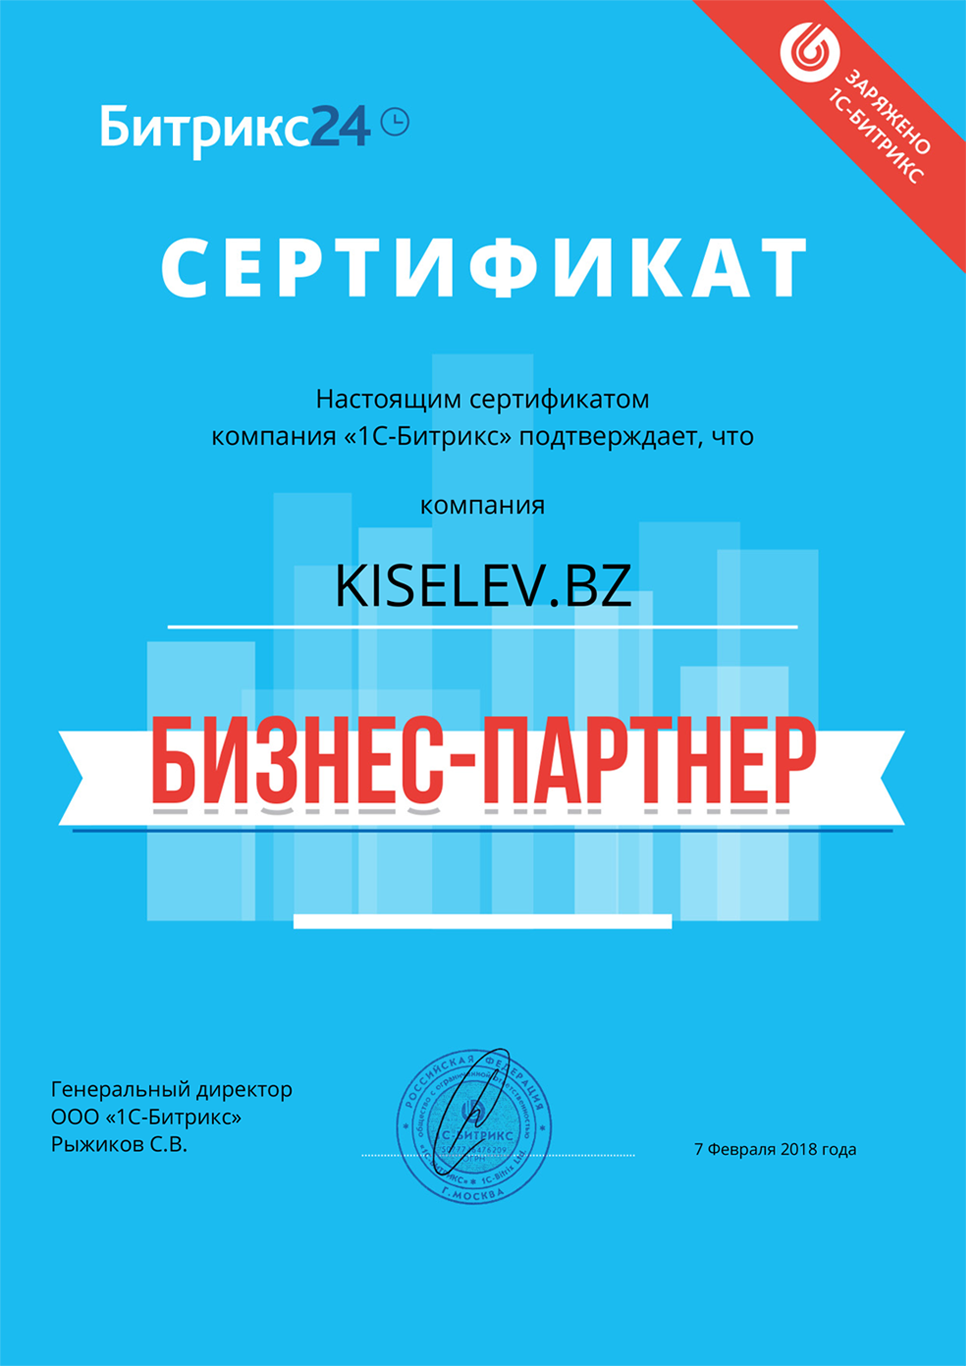 Сертификат партнёра по АМОСРМ в Байкальске